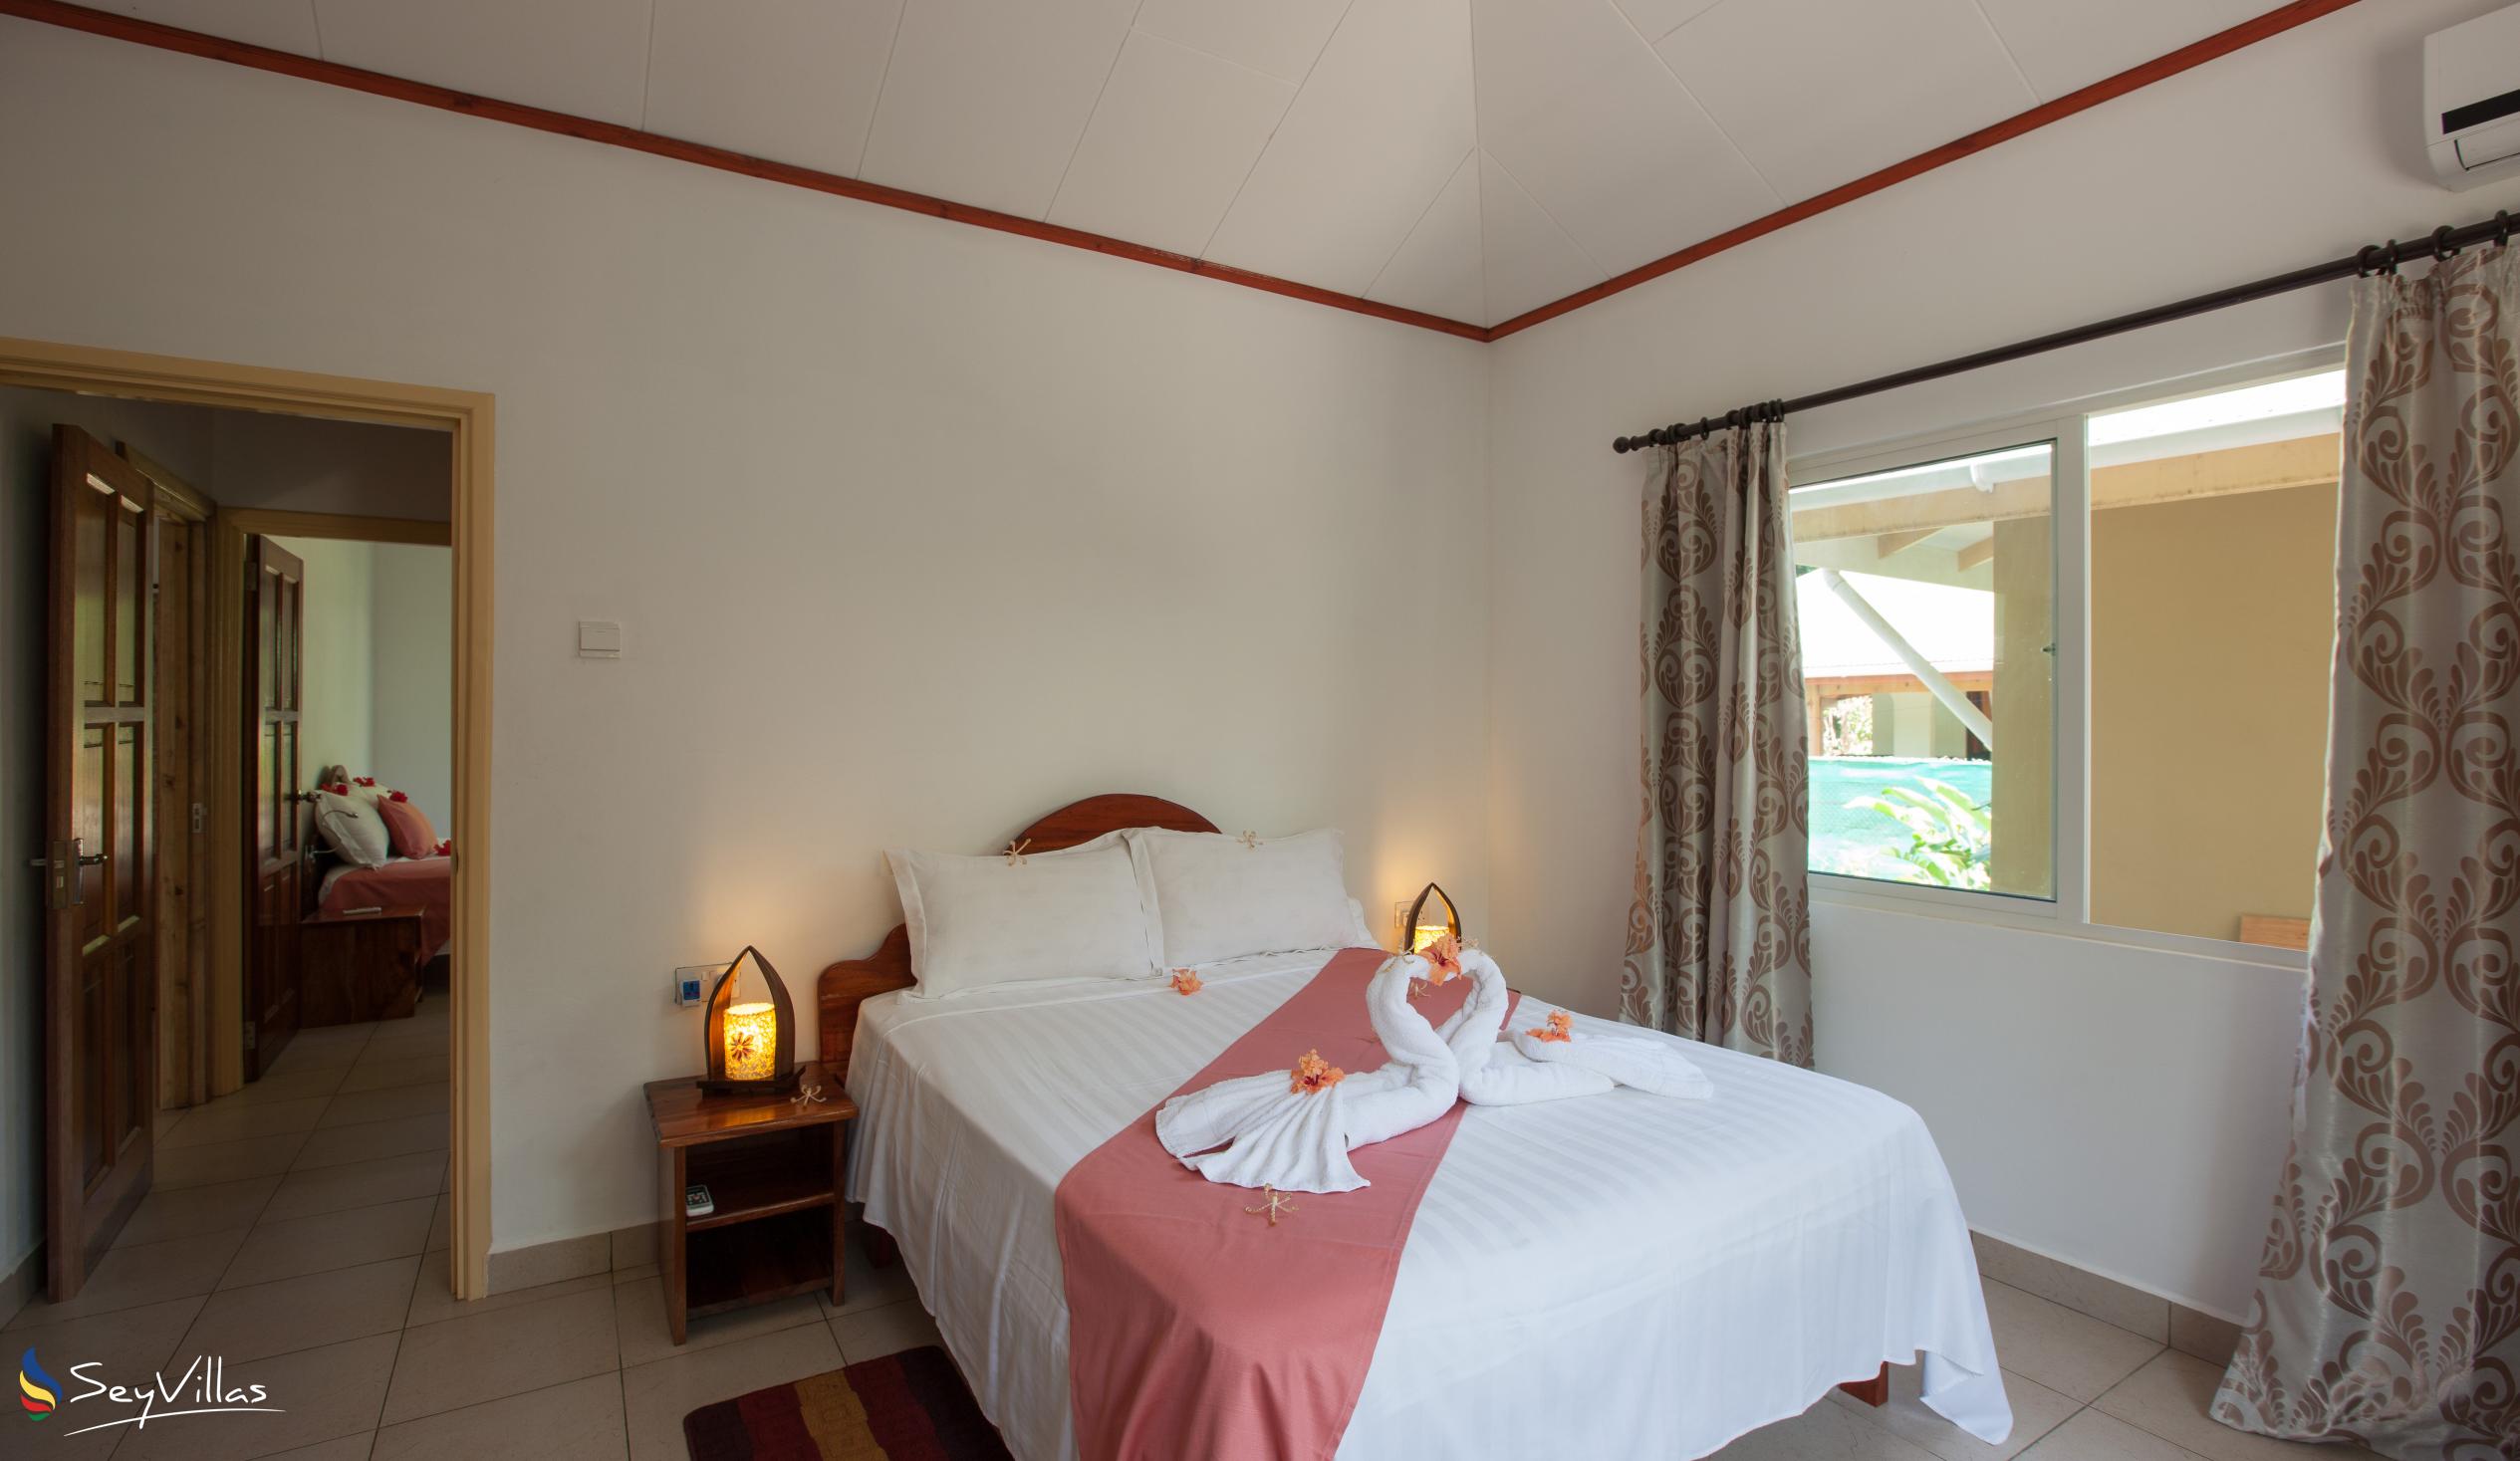 Foto 22: Hostellerie La Digue - Chalet 3 chambres - La Digue (Seychelles)